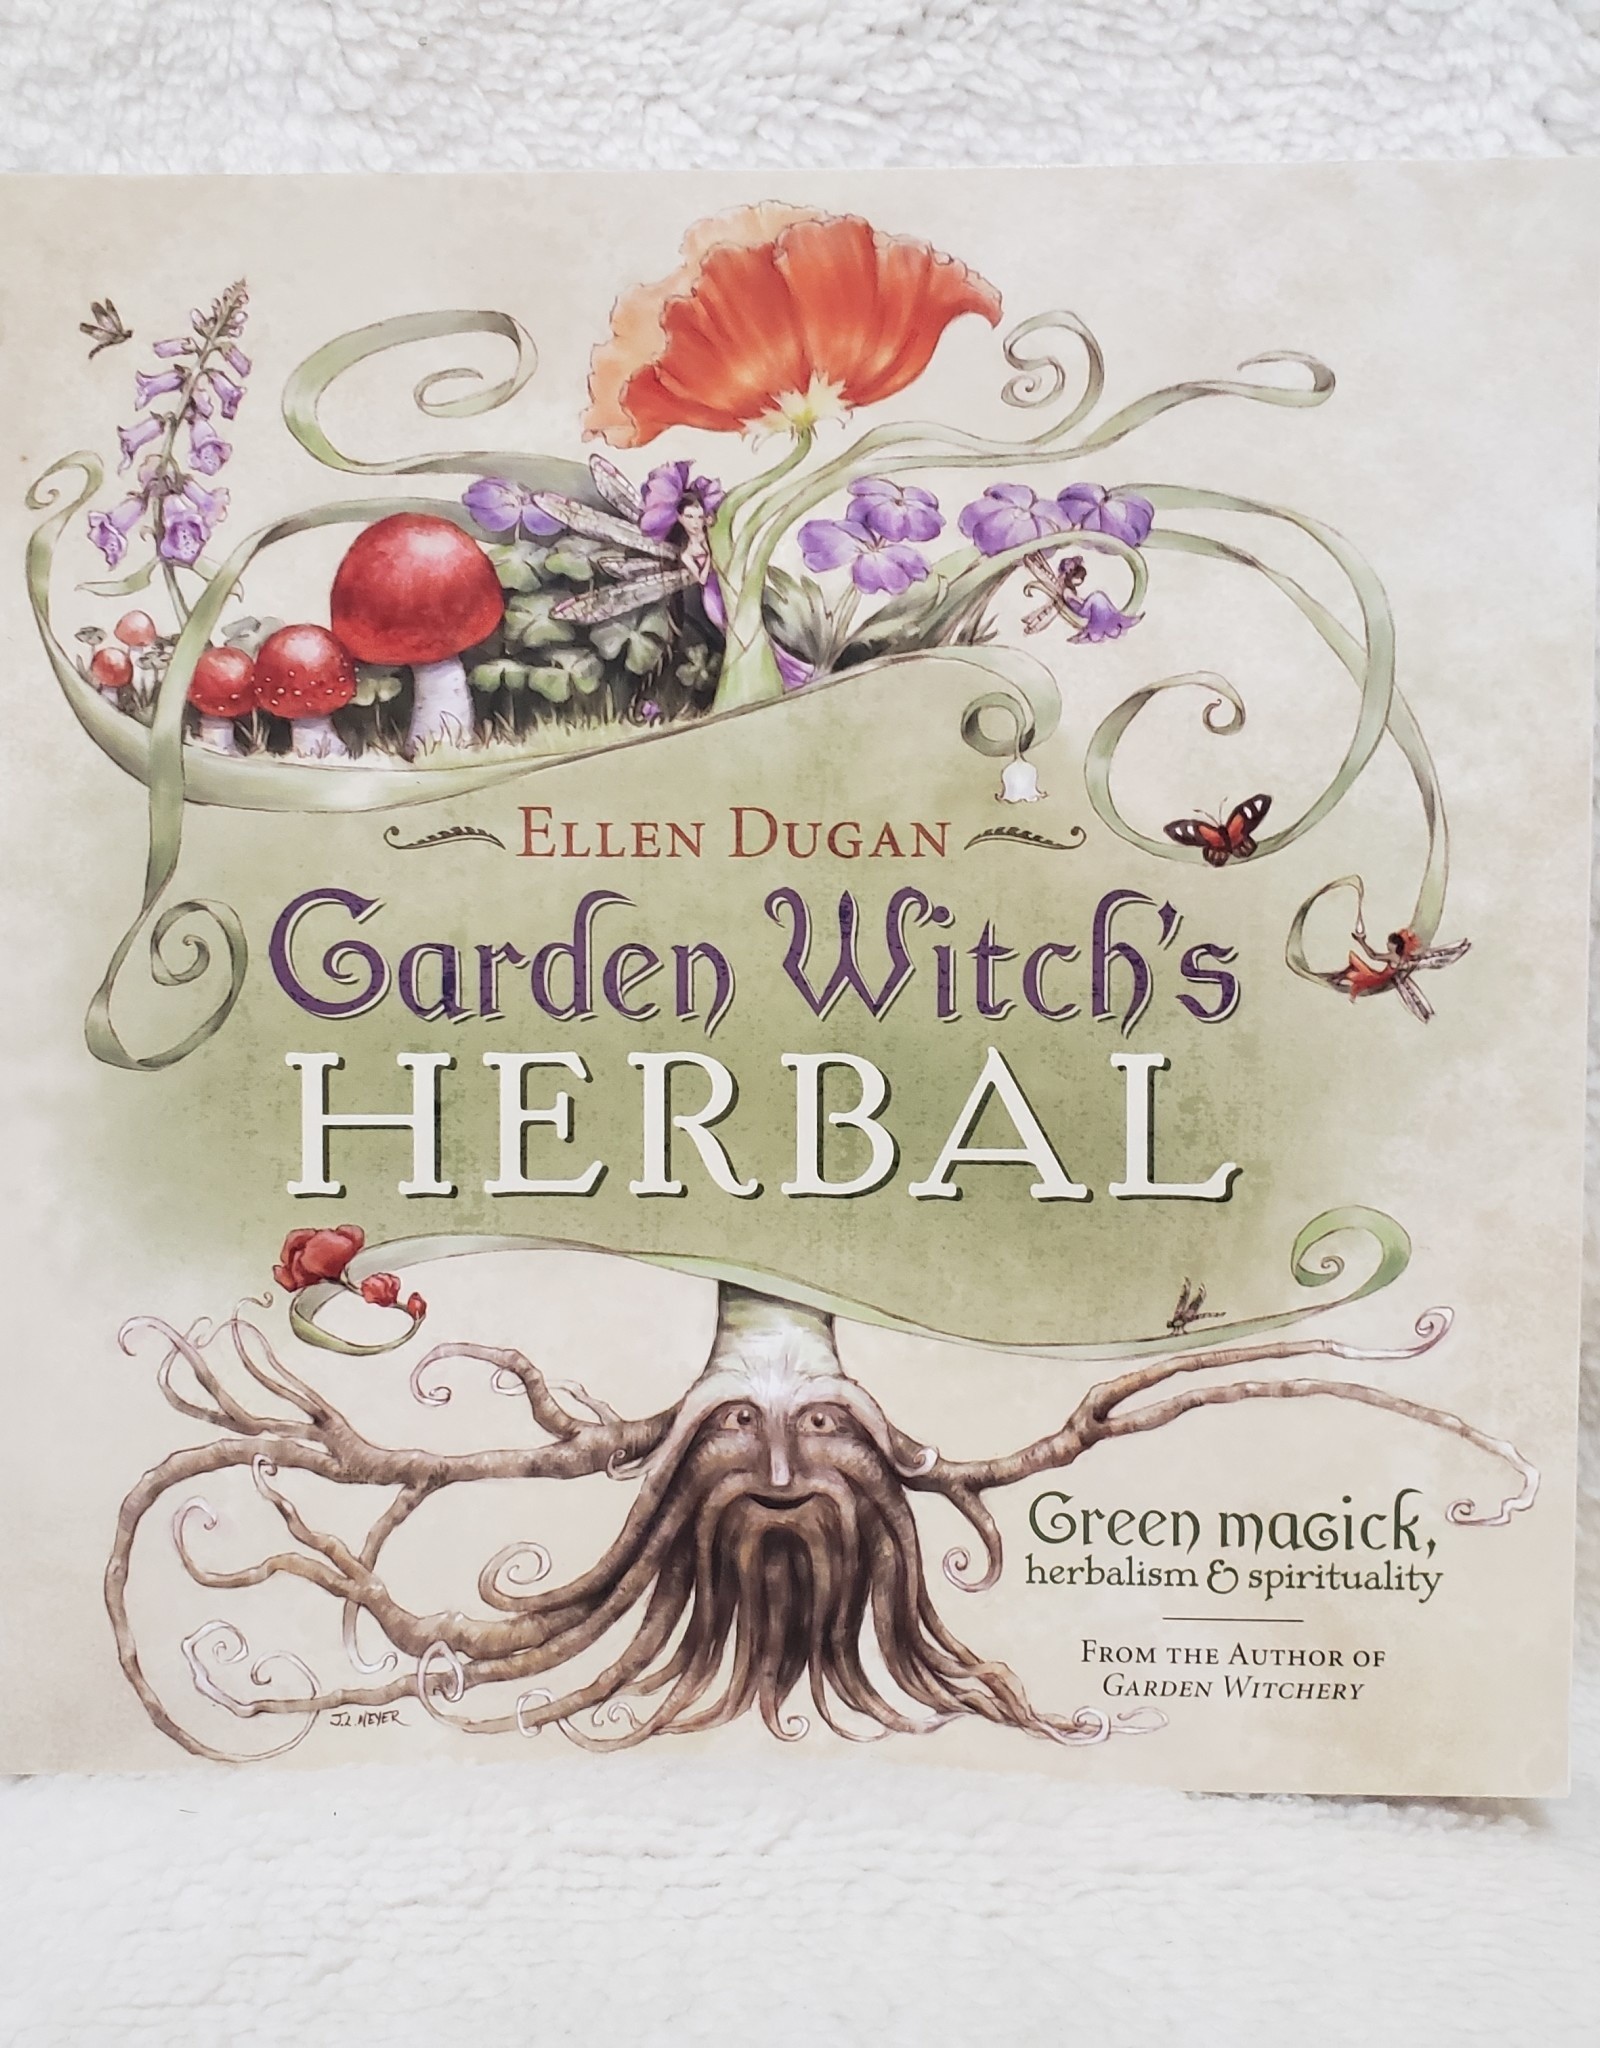 Garden Witch's Herbal